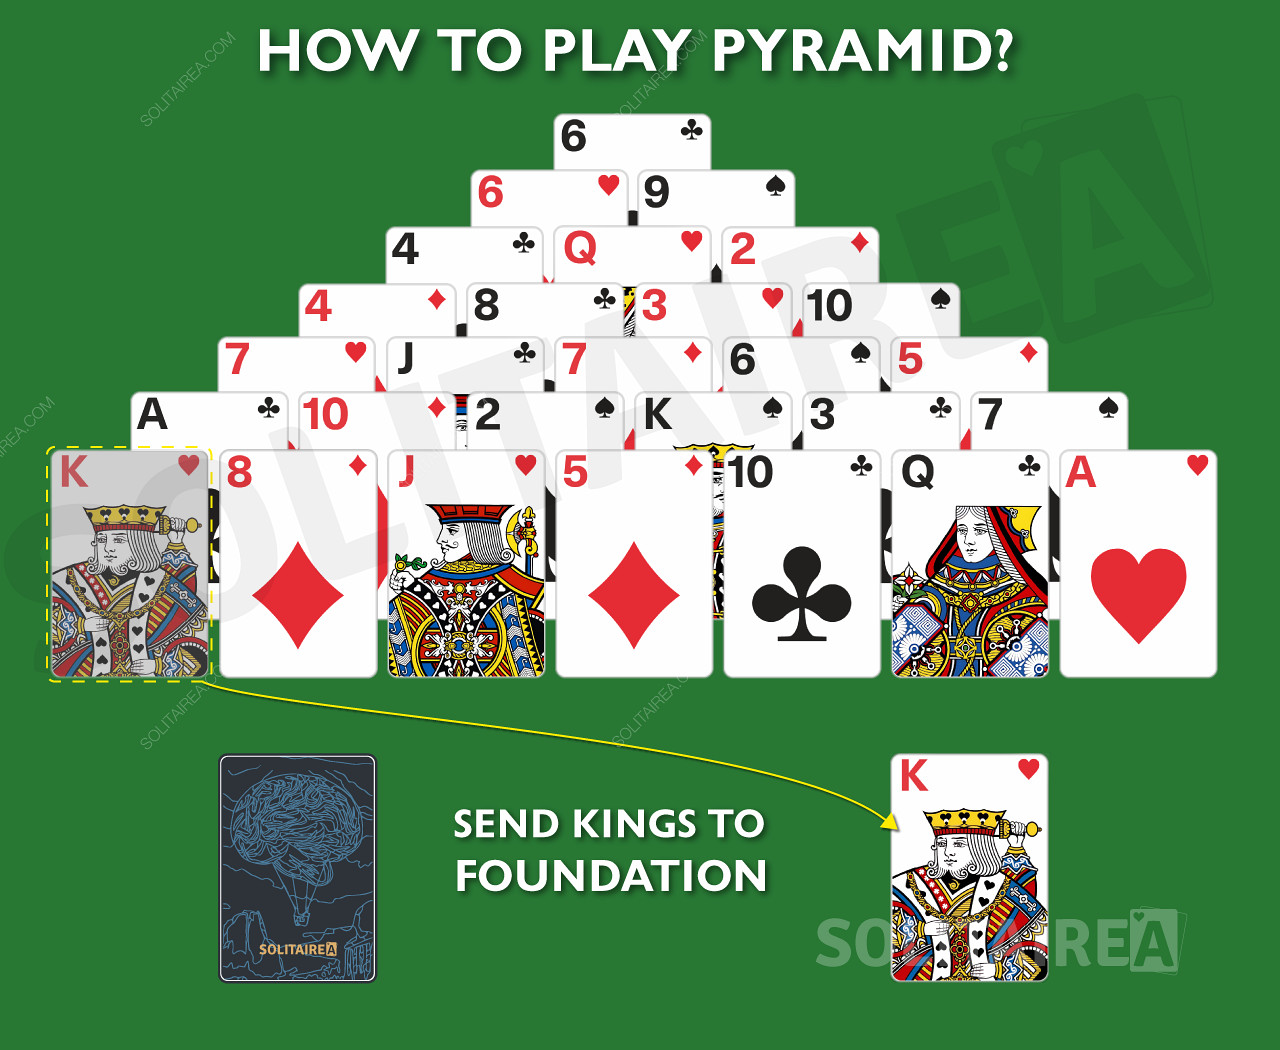 Dans Pyramid Solitaire, les rois peuvent être déplacés directement vers la fondation.